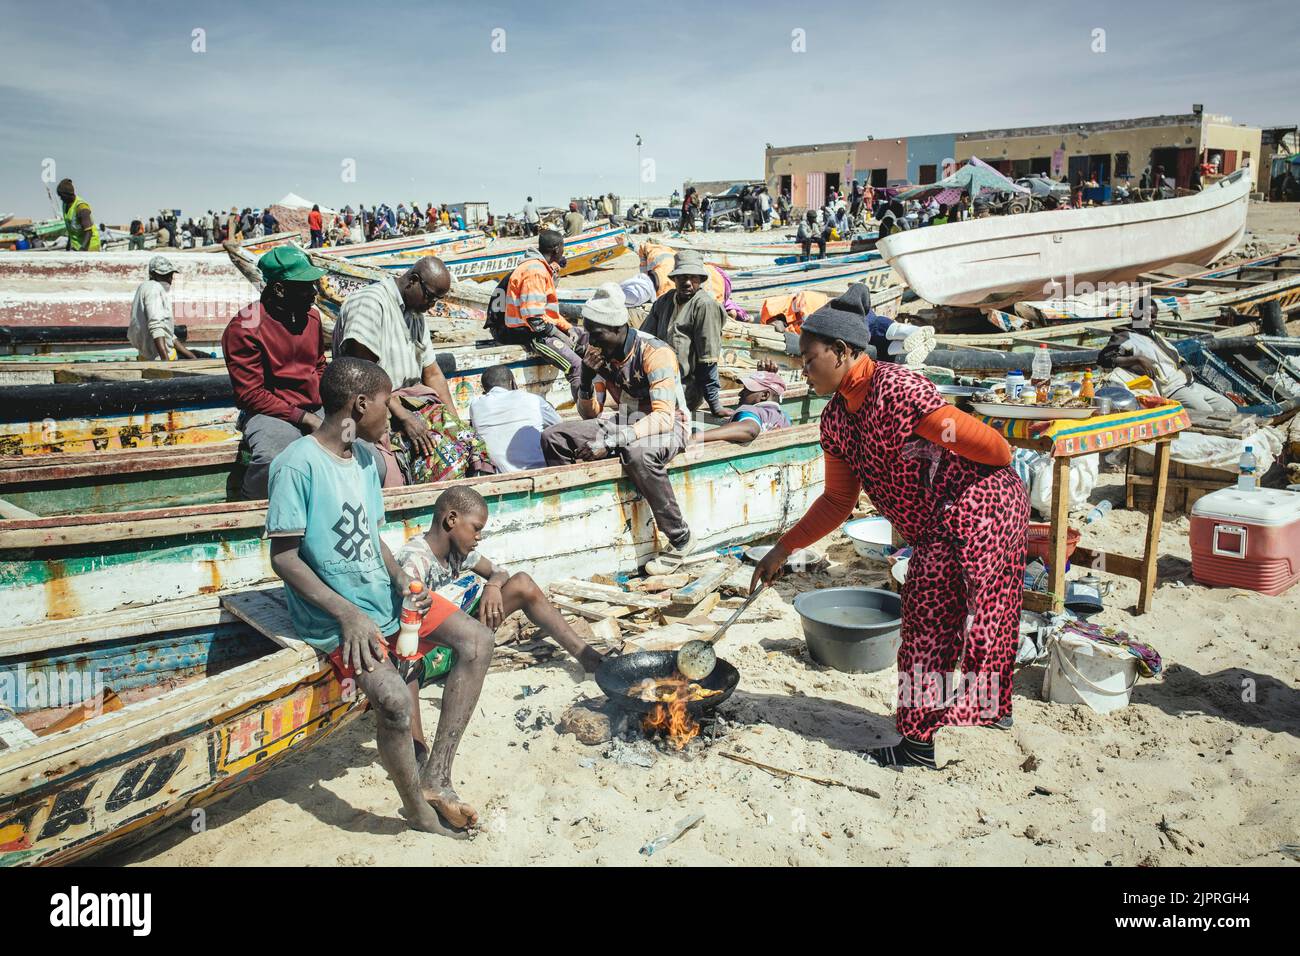 Spiaggia tradizionale di pesca, Plage des Pecheurs Traditionnels, una famiglia prepara il pranzo sulla spiaggia, Nouakchott, Mauritania Foto Stock